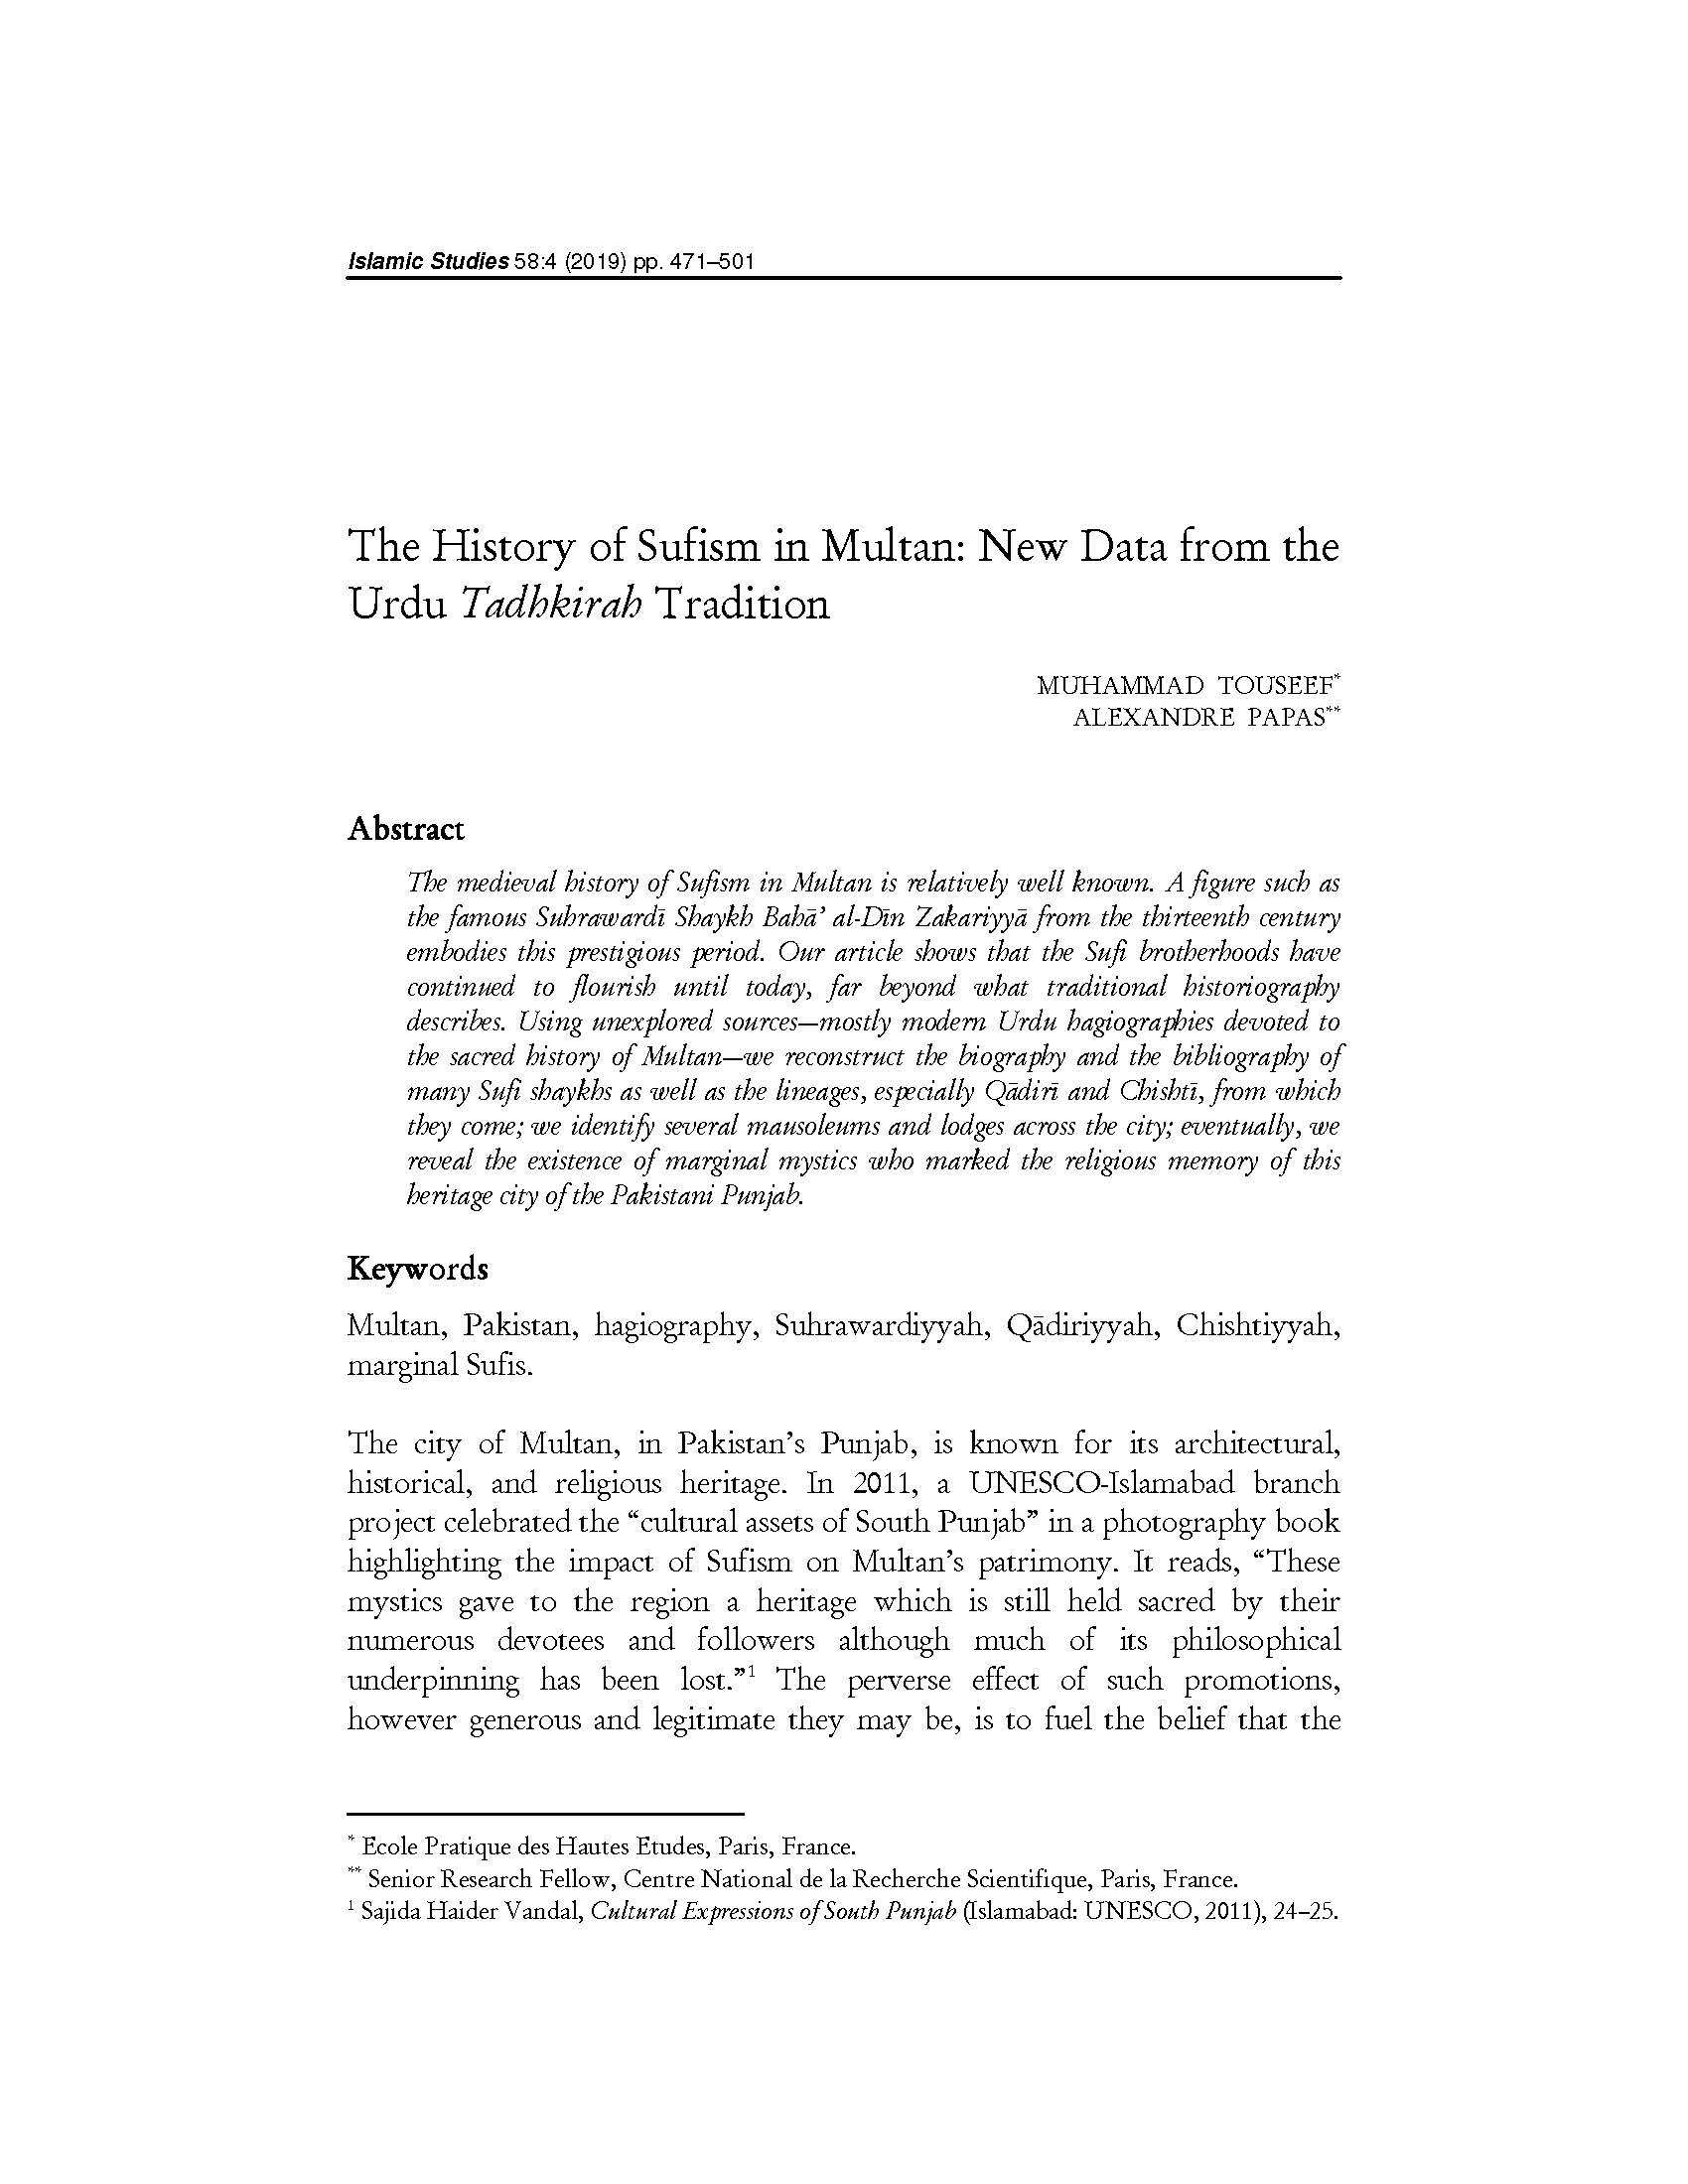 ملتان میں تصوف کی تاریخ : The History of Sufism in Multan